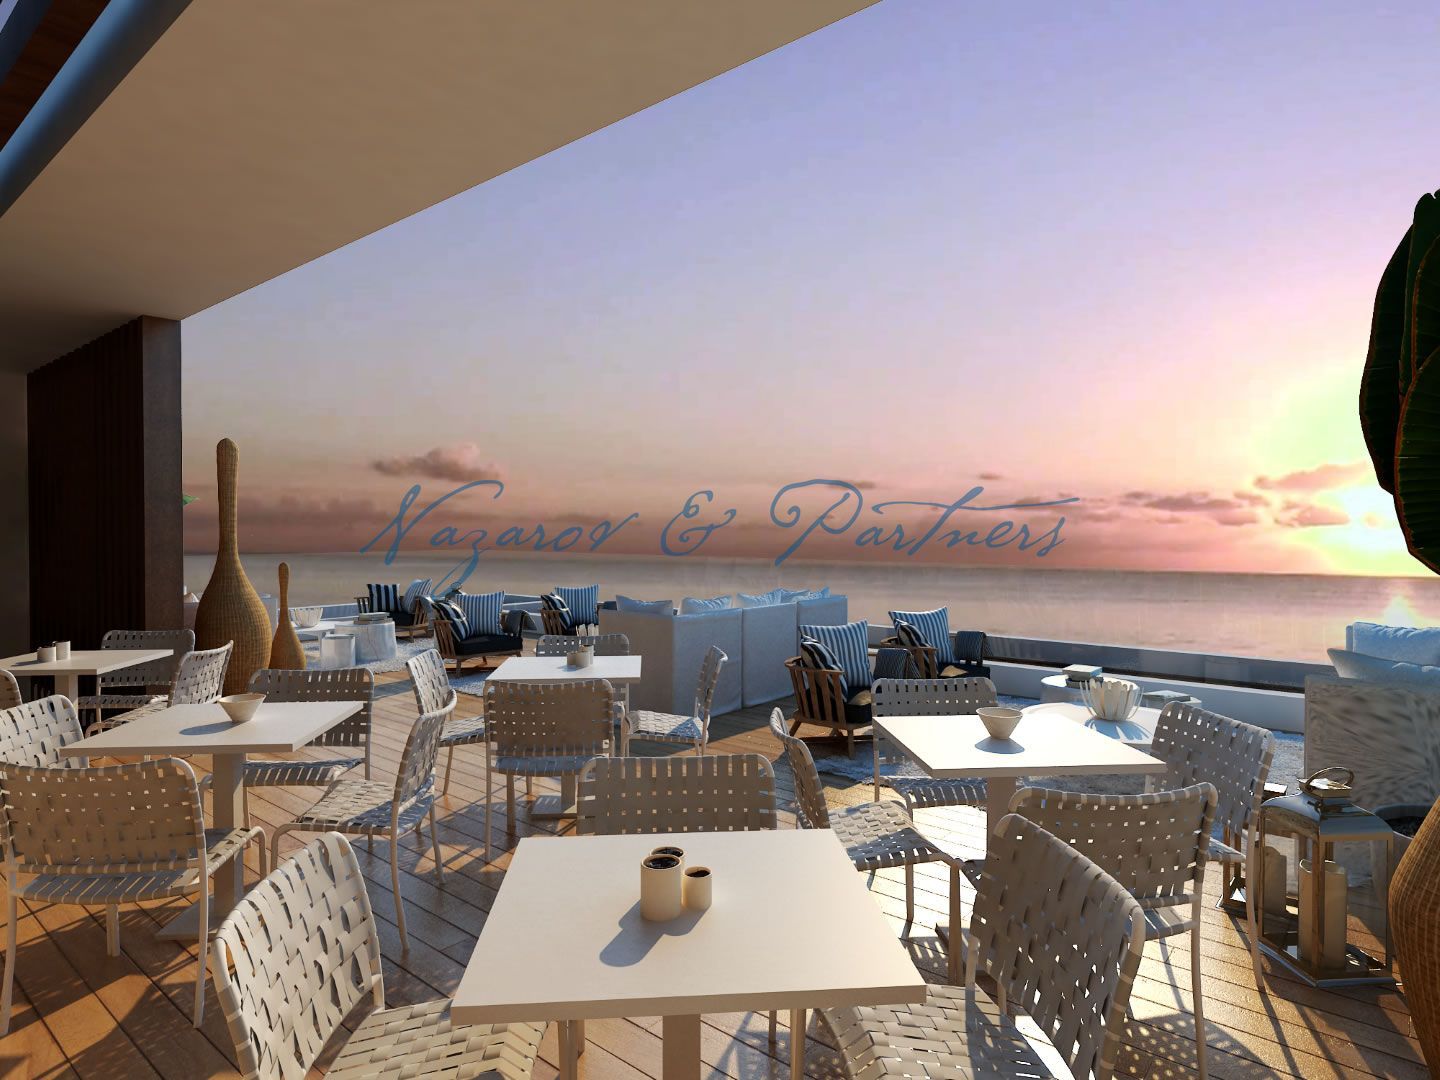 Продажа 3х спальной виллы, расположенной на знаменитом пляже Коннос и мысе Греко, рядом с национальным парком Кипра в Протарасе